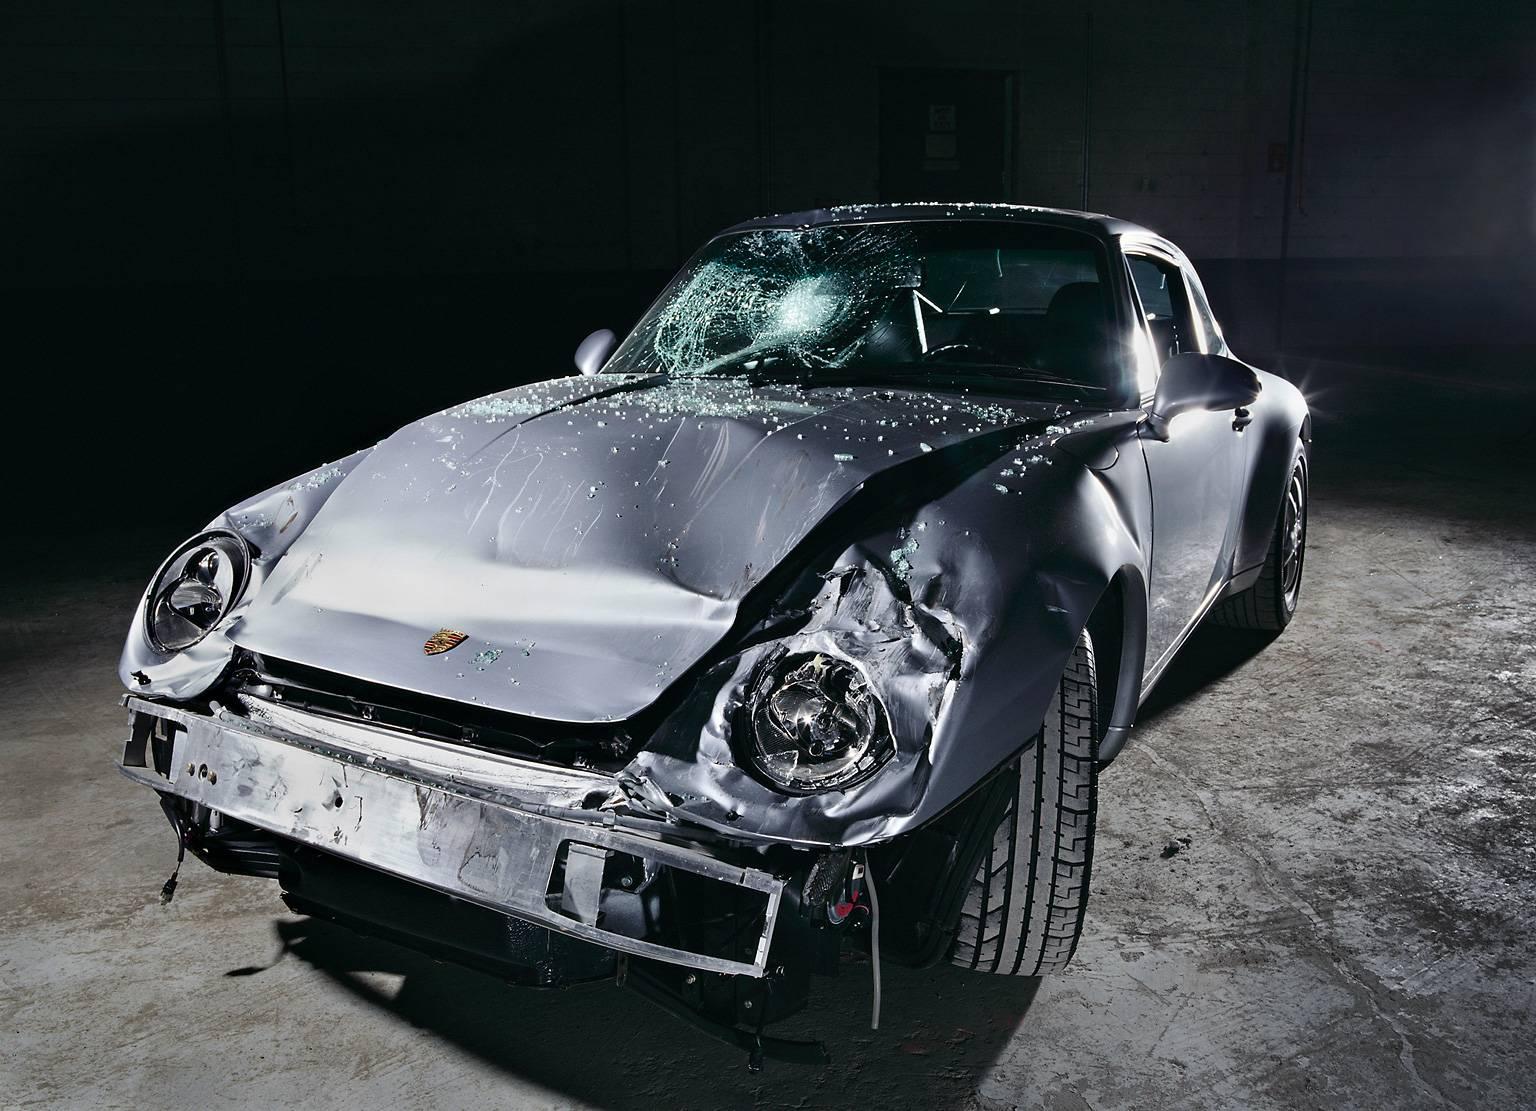 Frank Schott Color Photograph – NINE-ONE-ONE-ONE ( Porsche 911) – gerahmtes, detailliertes Foto eines verunglückten Autos 